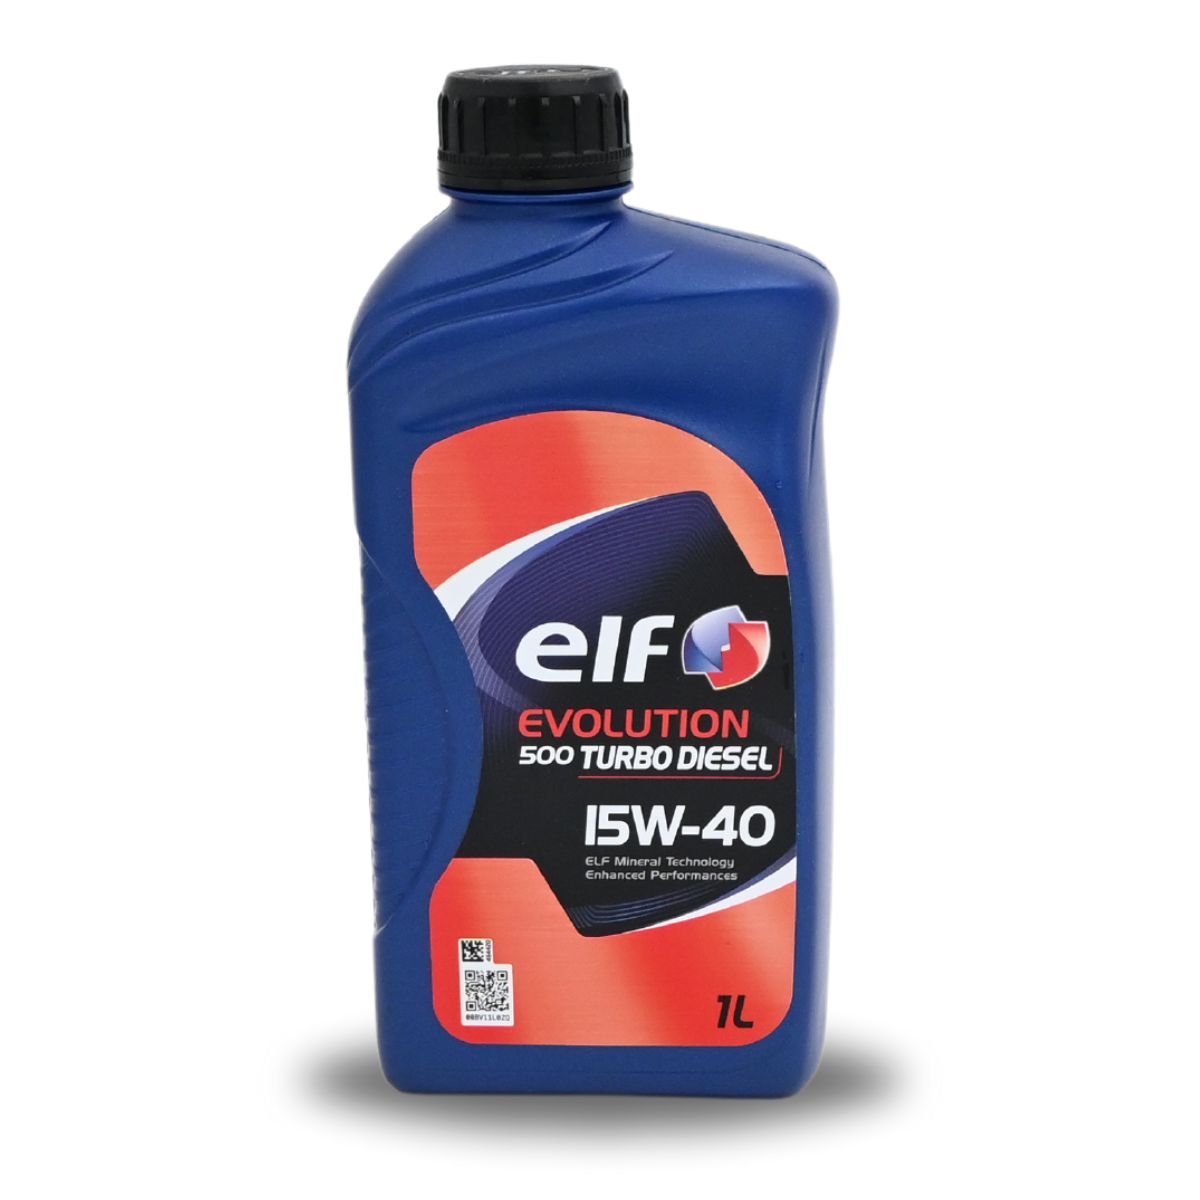 ELF EVOL 500 TD 15W40 1/1 